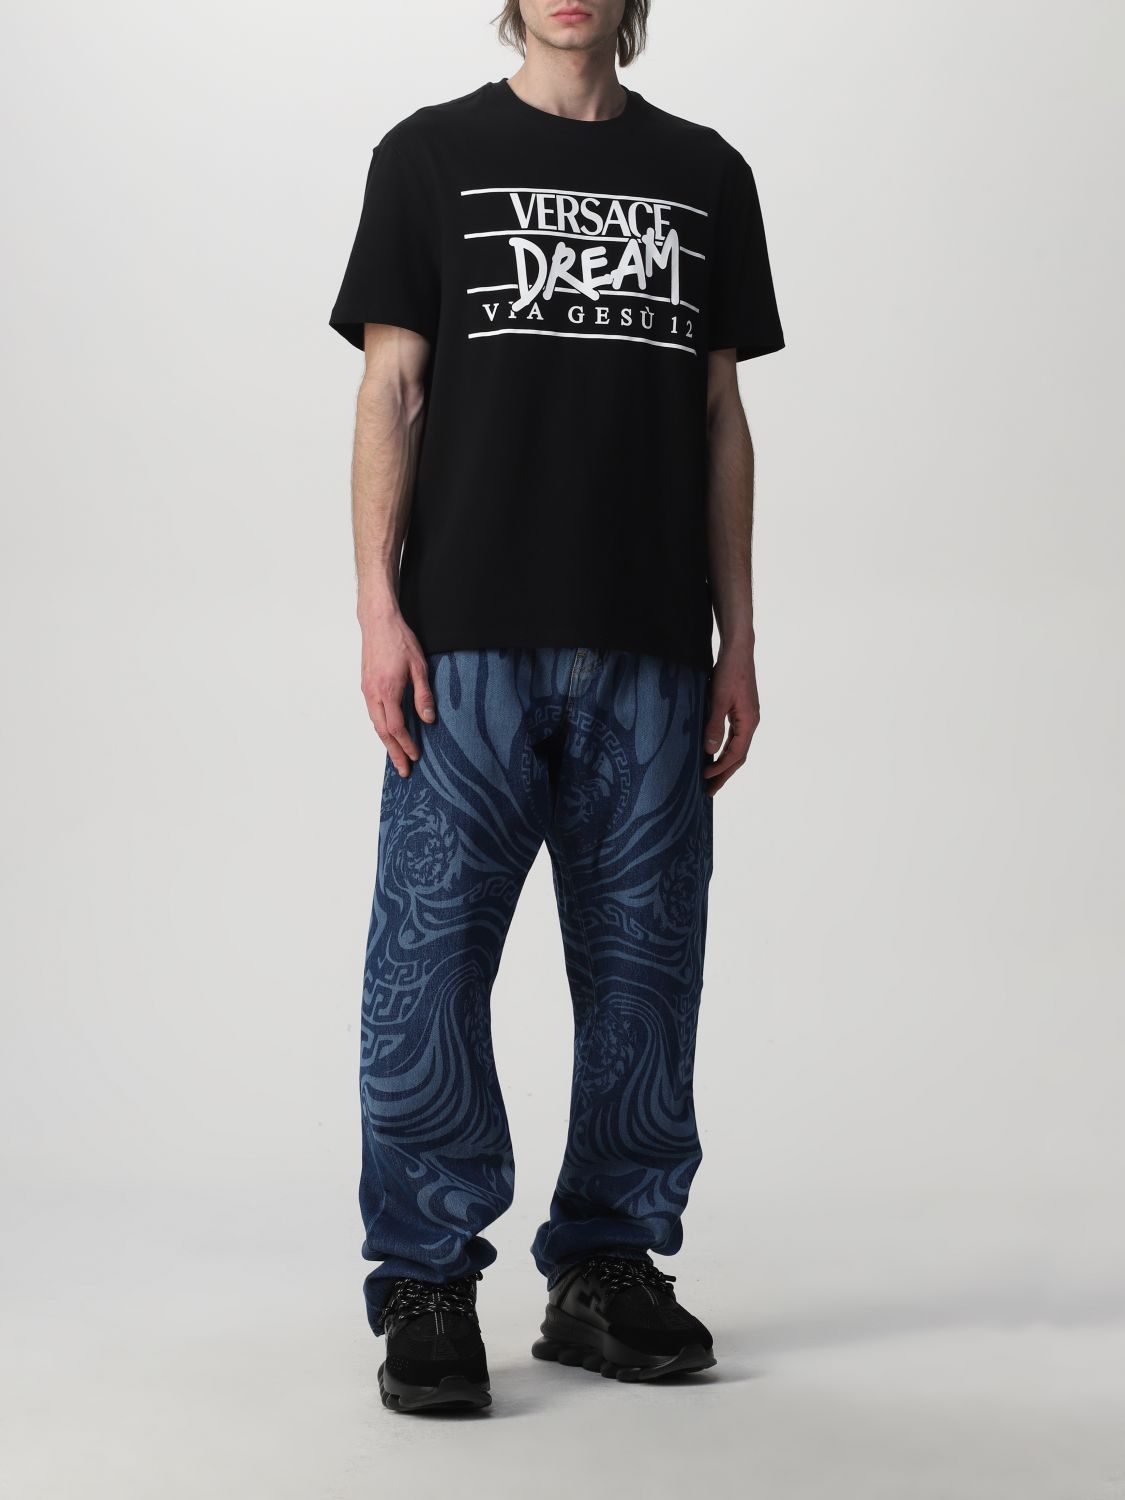 T-shirt Versace: T-shirt Versace homme noir 2